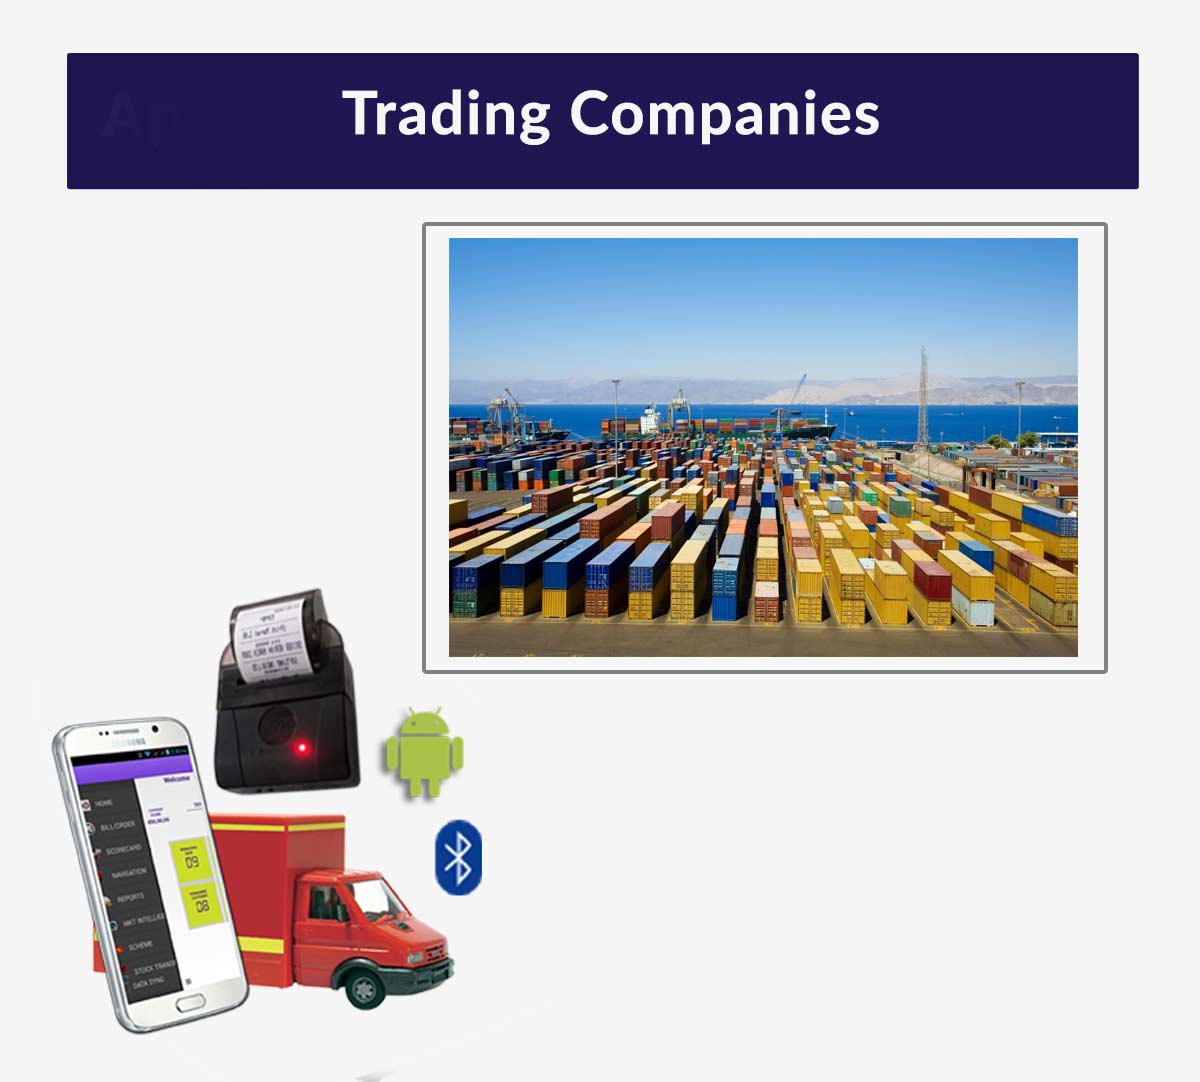 Trading Companies